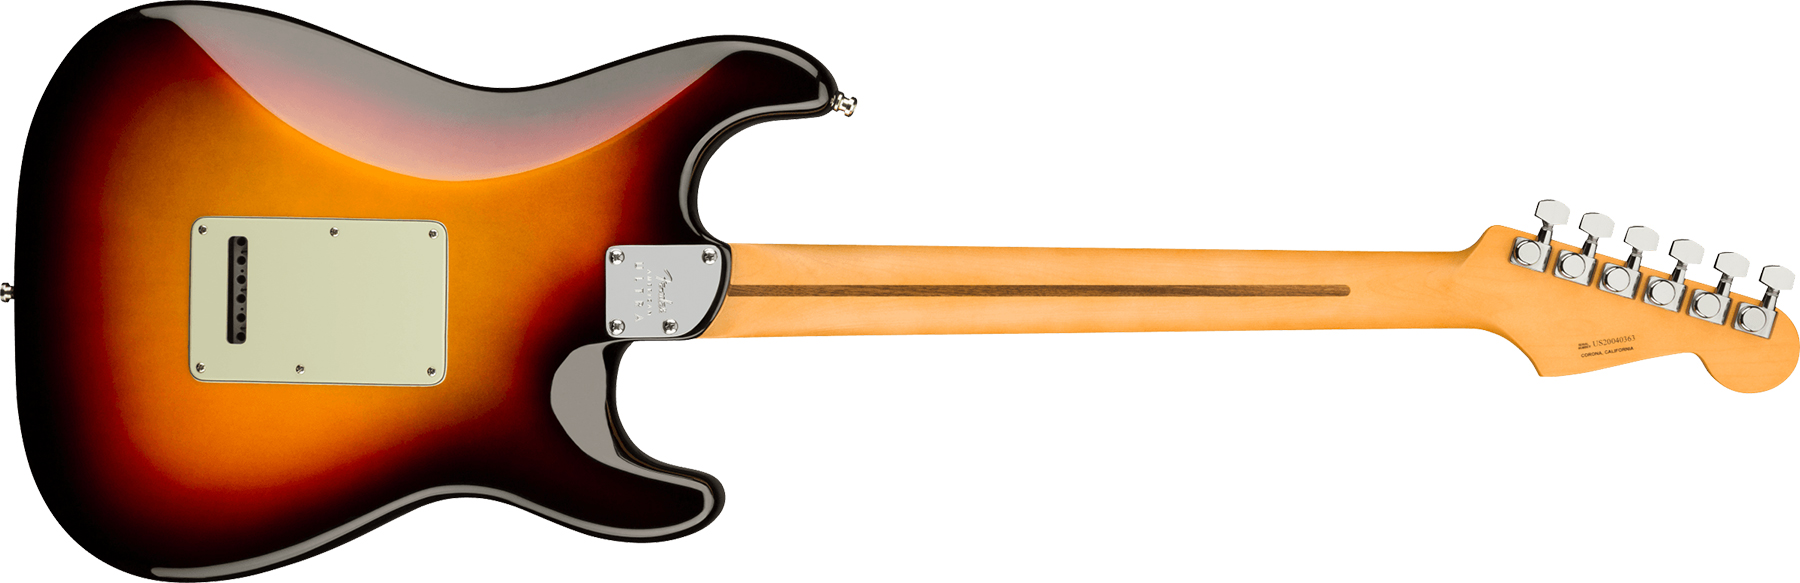 Fender Strat American Ultra Lh Gaucher Usa Rw +etui - Ultraburst - Guitarra electrica para zurdos - Variation 1